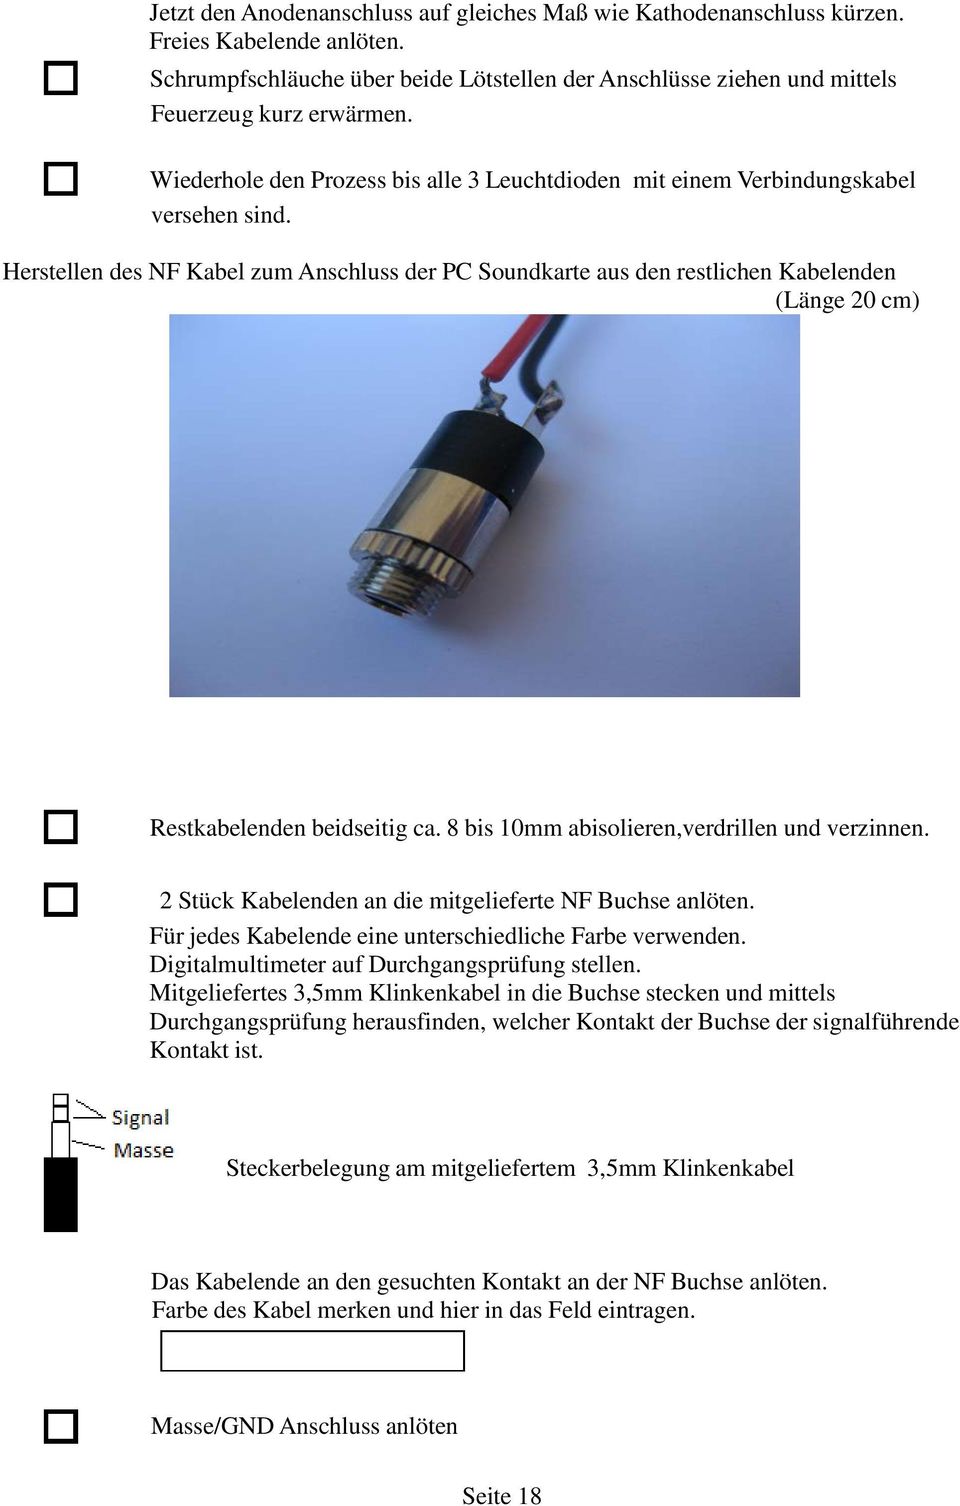 Herstellen des NF Kabel zum Anschluss der PC Soundkarte aus den restlichen Kabelenden (Länge 20 cm) Restkabelenden beidseitig ca. 8 bis 10mm abisolieren,verdrillen und verzinnen.